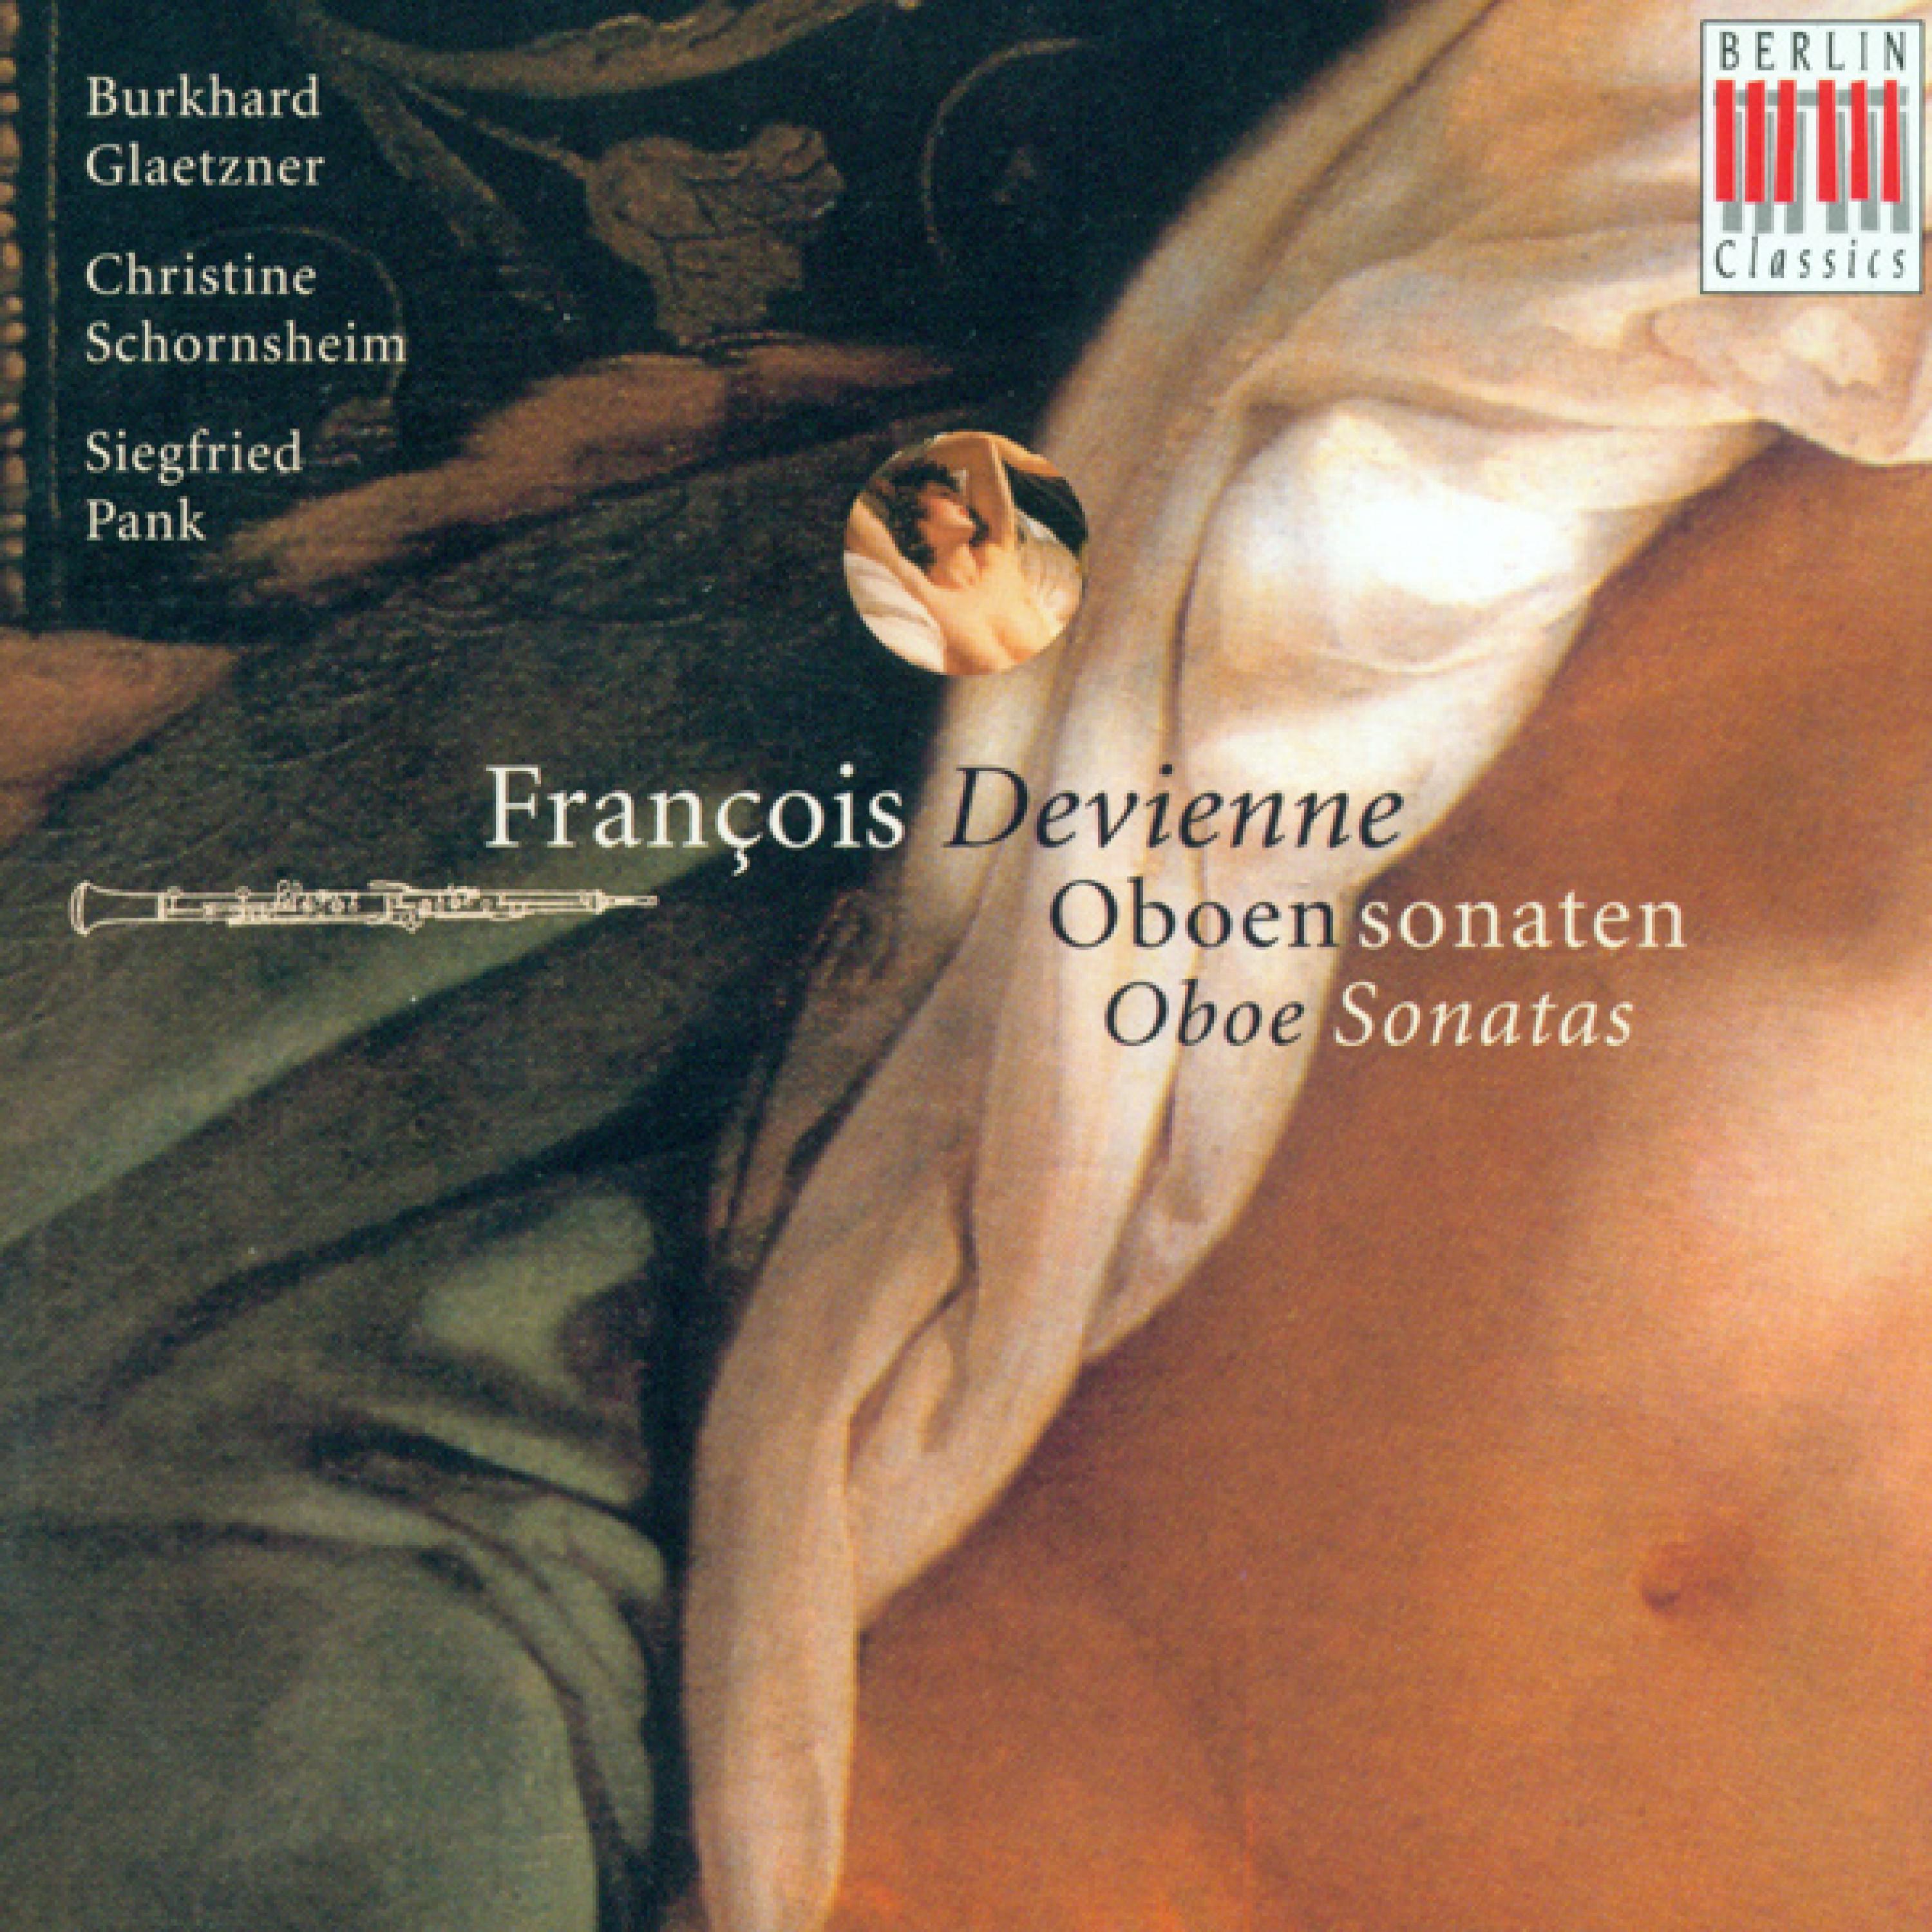 Francois Devienne: Chamber Music - Opp. 70, 71 (Glaetzner, Pank, Schornsheim)